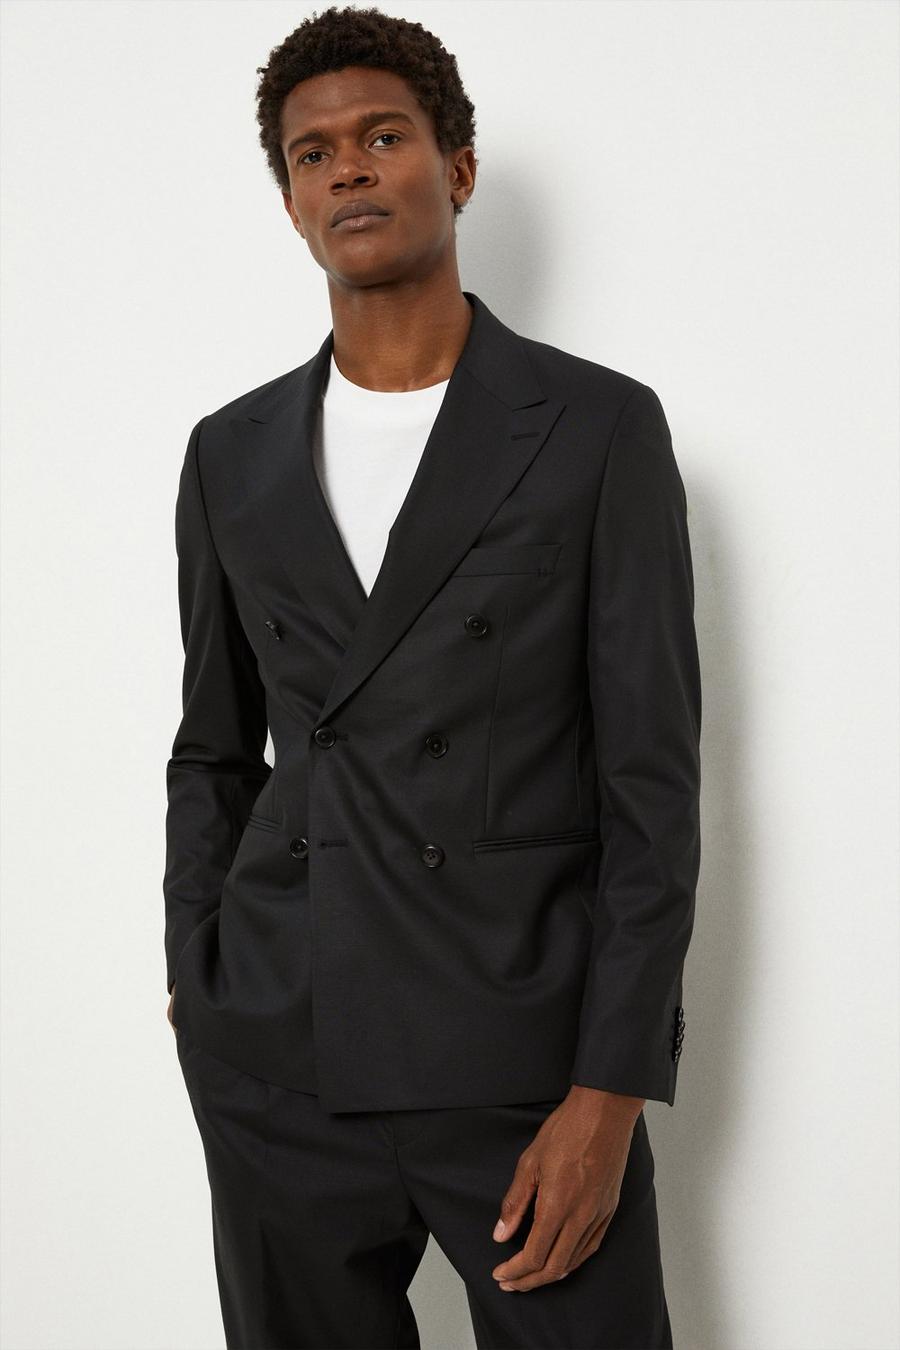 Men's Suits | Formal & Casual Suits | Burton